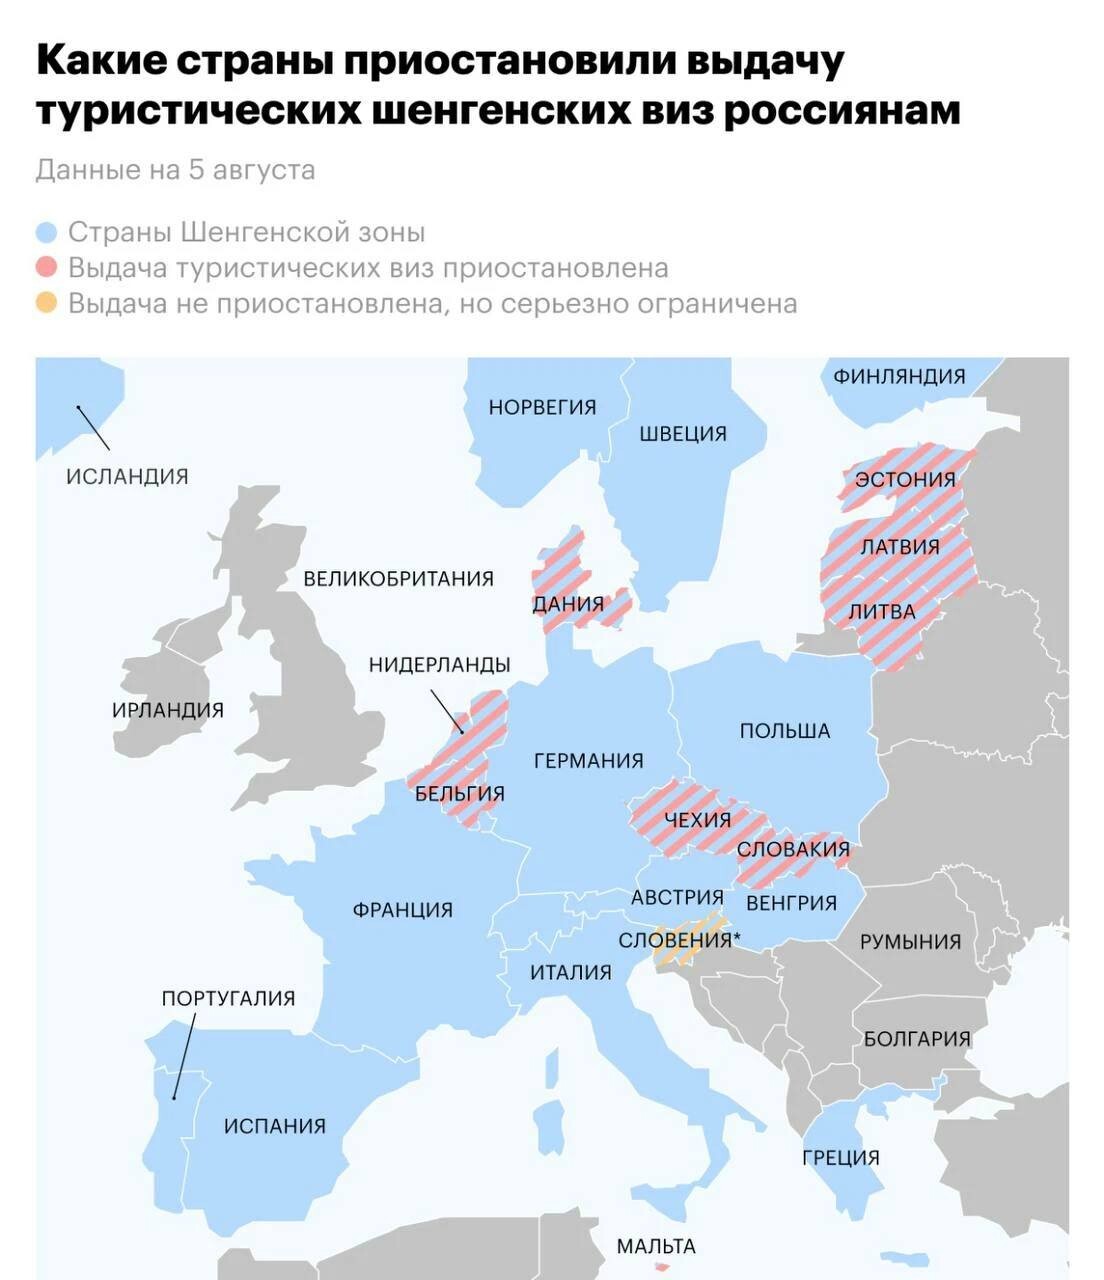 Шенгенская виза россиянам сейчас. Шенгенские страны. Страны Шенгена на карте. Государства Евросоюза. Шенгенская зона.